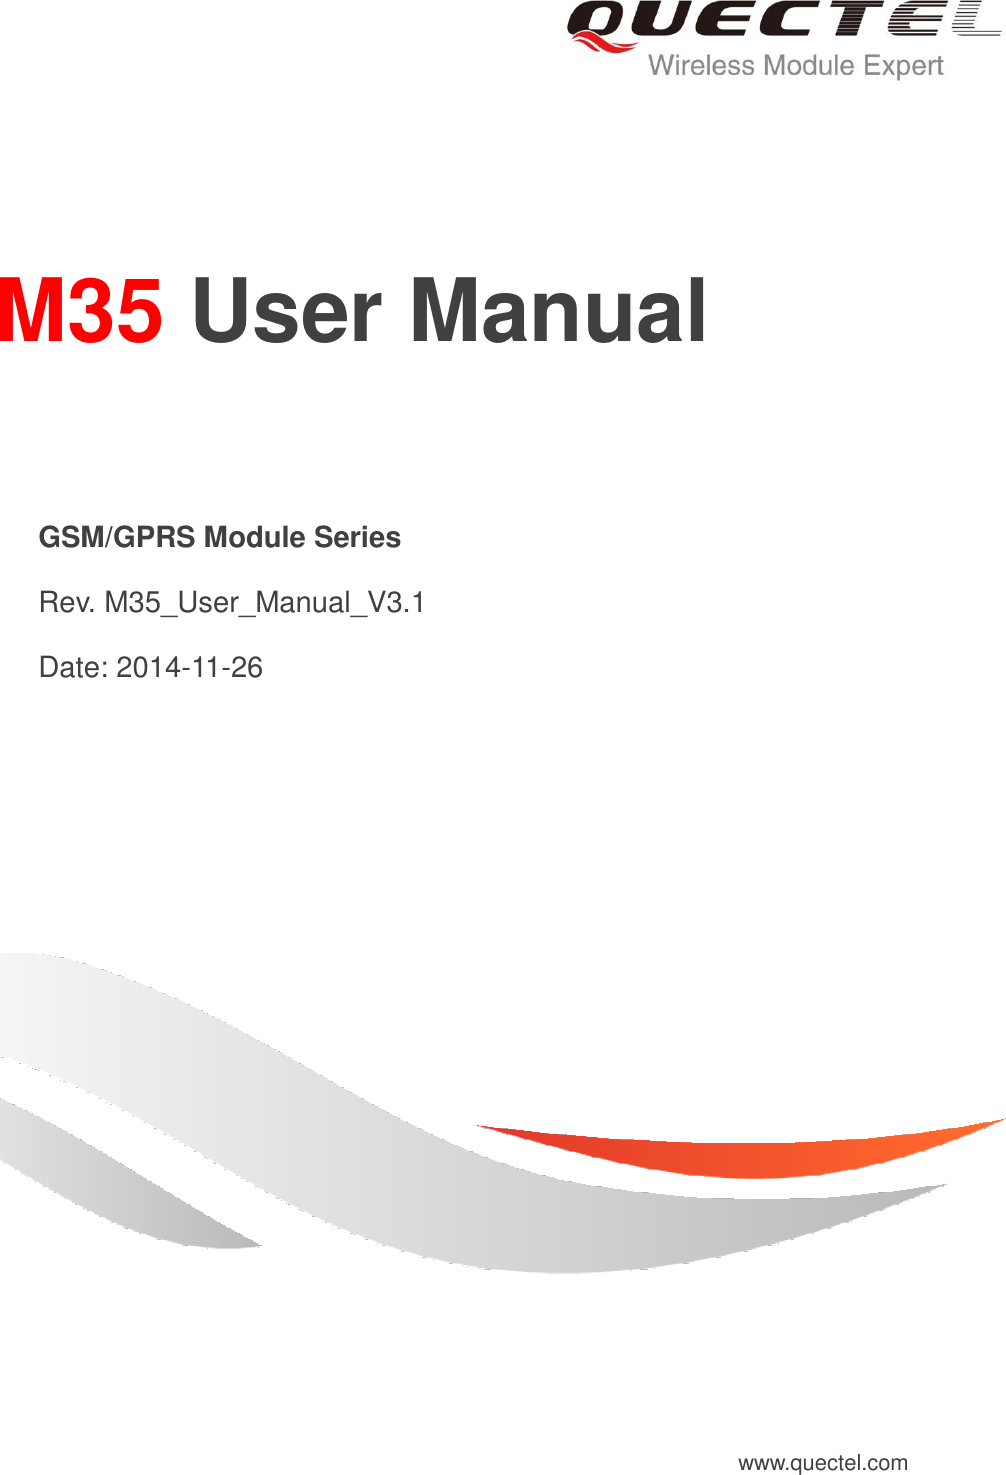     M35 User Manual   GSM/GPRS Module Series   Rev. M35_User_Manual_V3.1   Date: 2014-11-26 www.quectel.com 